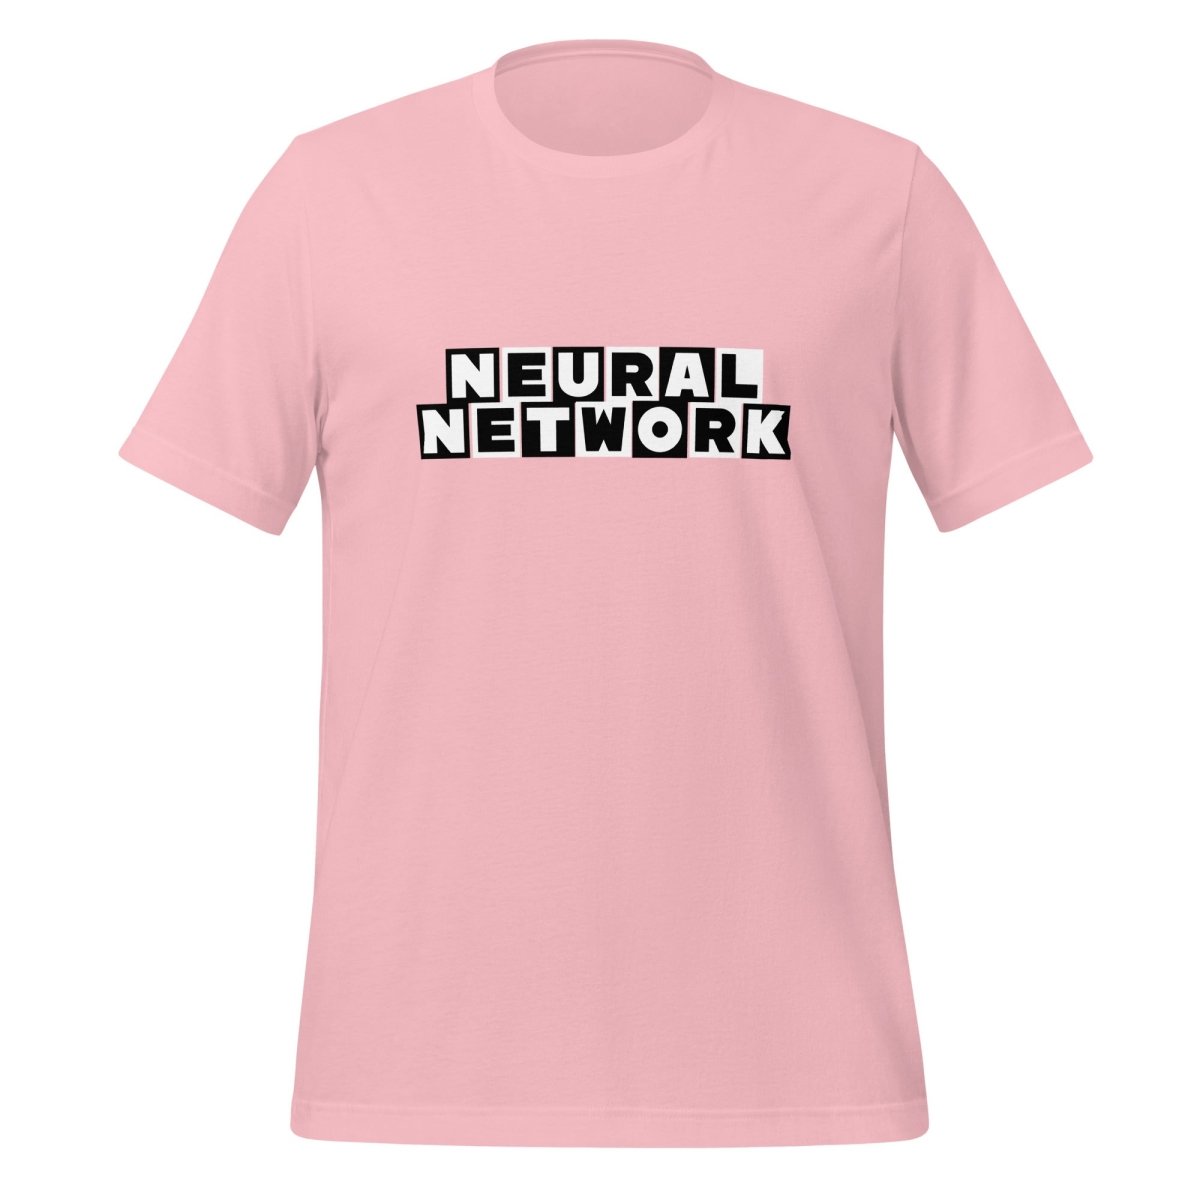 NEURAL NETWORK T - Shirt (unisex) - Pink - AI Store